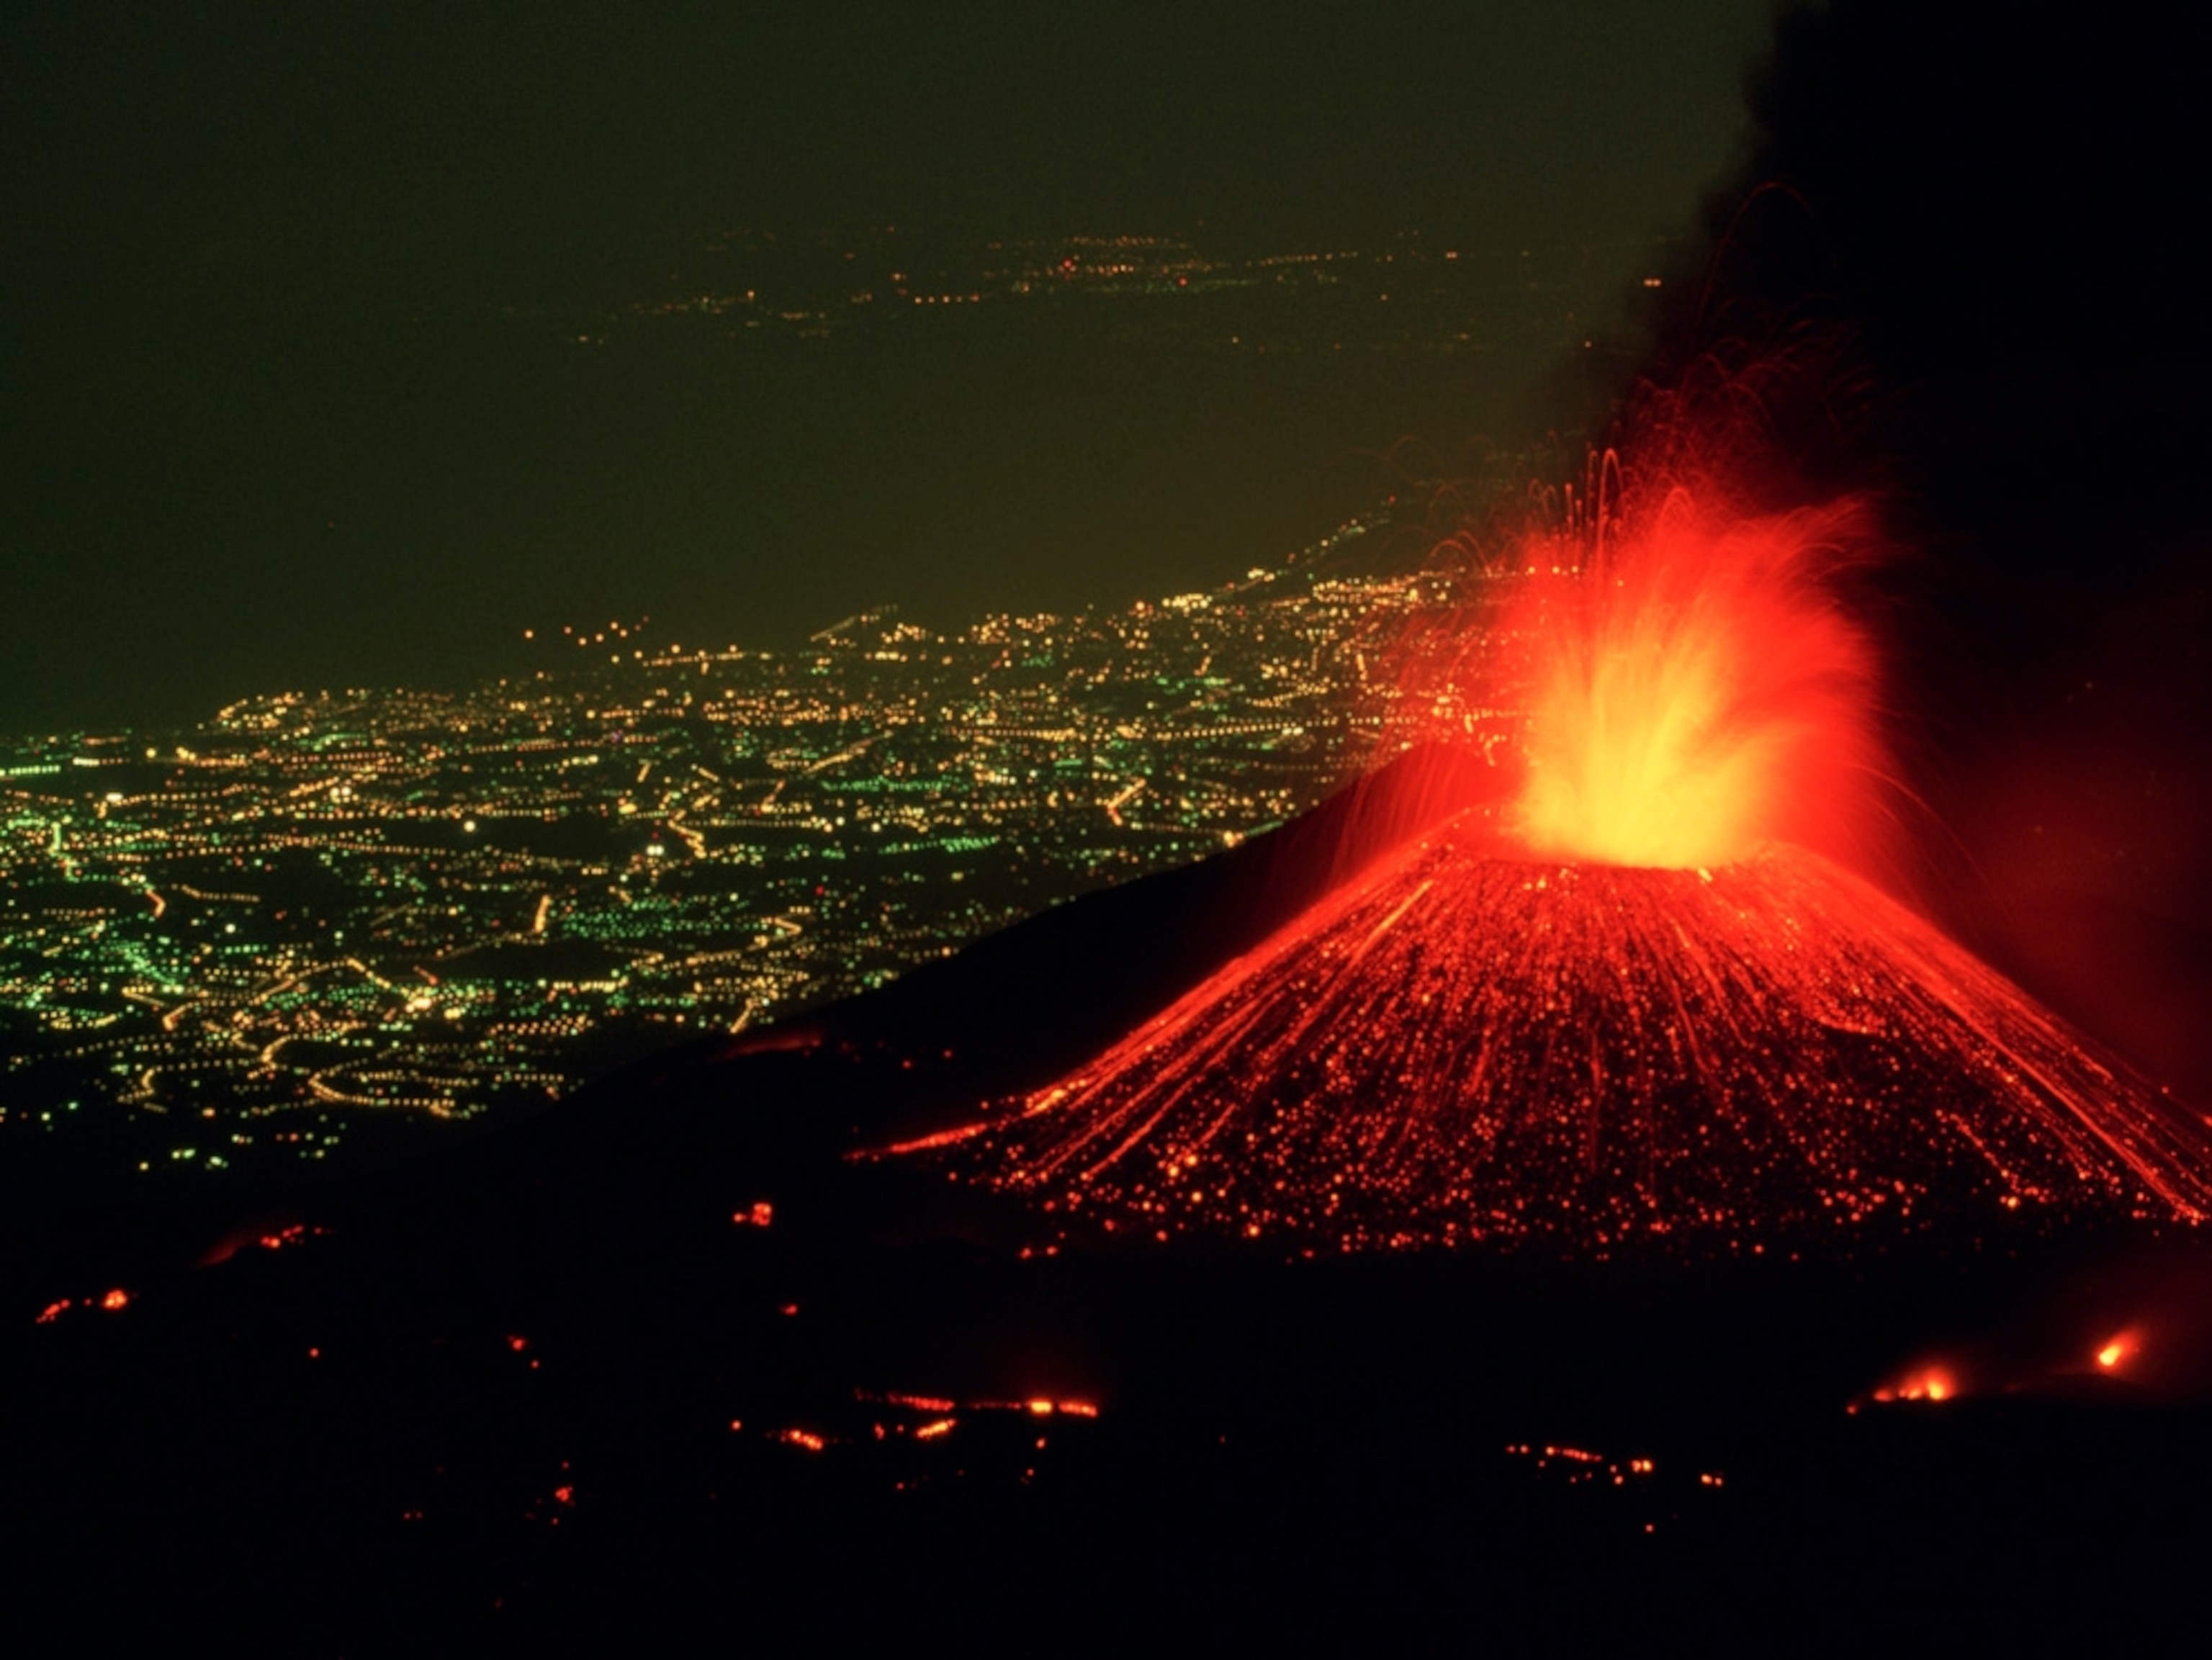 چشم انداز شهر در شب از فوران کوه آتشفشان فعال نارنجی رنگ 